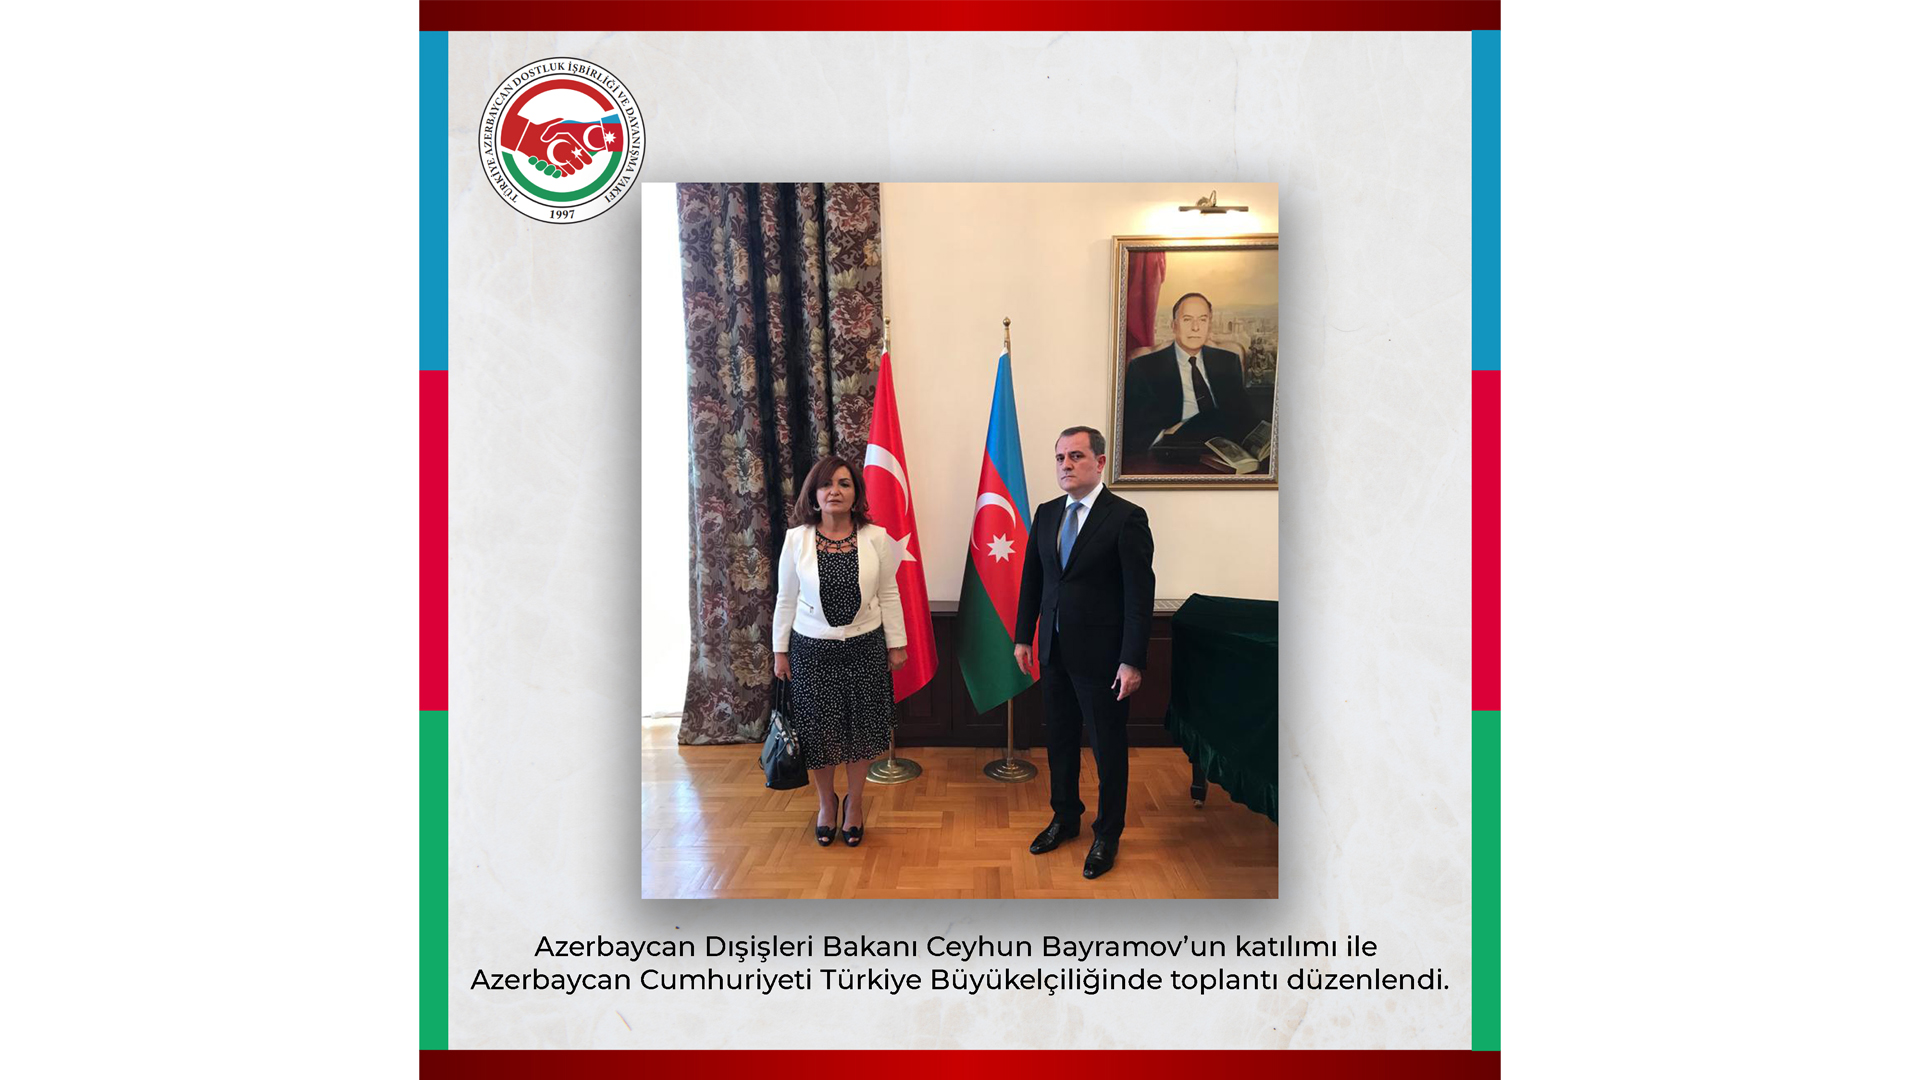 Azerbaycan Dışişleri Bakanı Ceyhun Bayramov'un İlk Resmi Ziyareti Ankara'ya